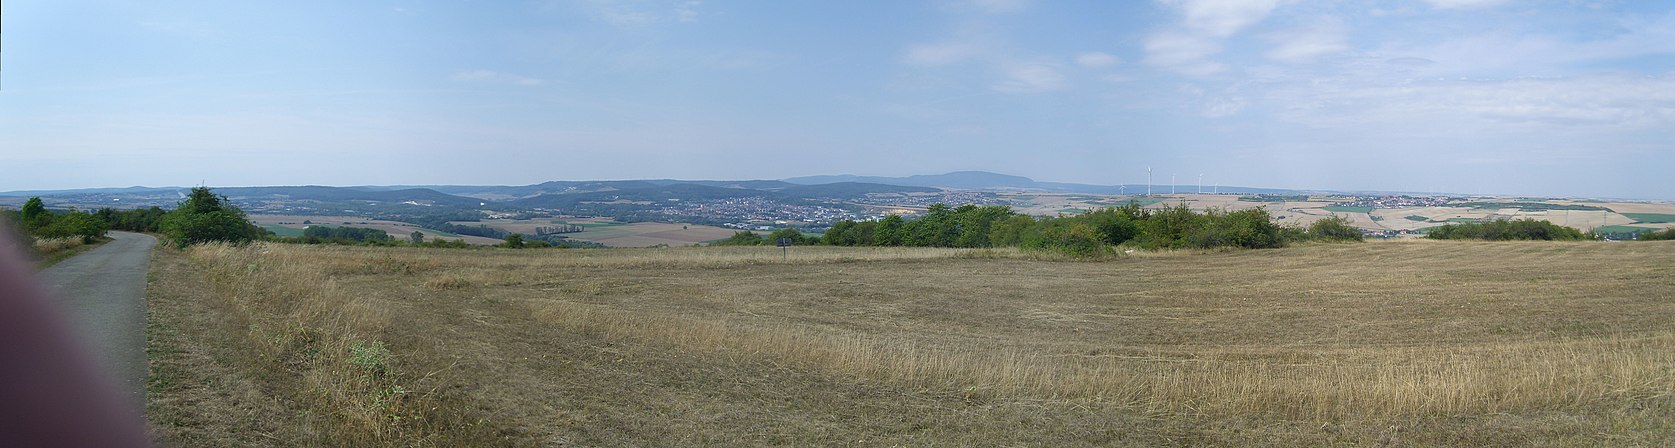 Blick vom Grünstadter Berg auf das Eisenberger Becken mit Eisenberg und Kerzenheim; rechts dahinter der Donnersberg